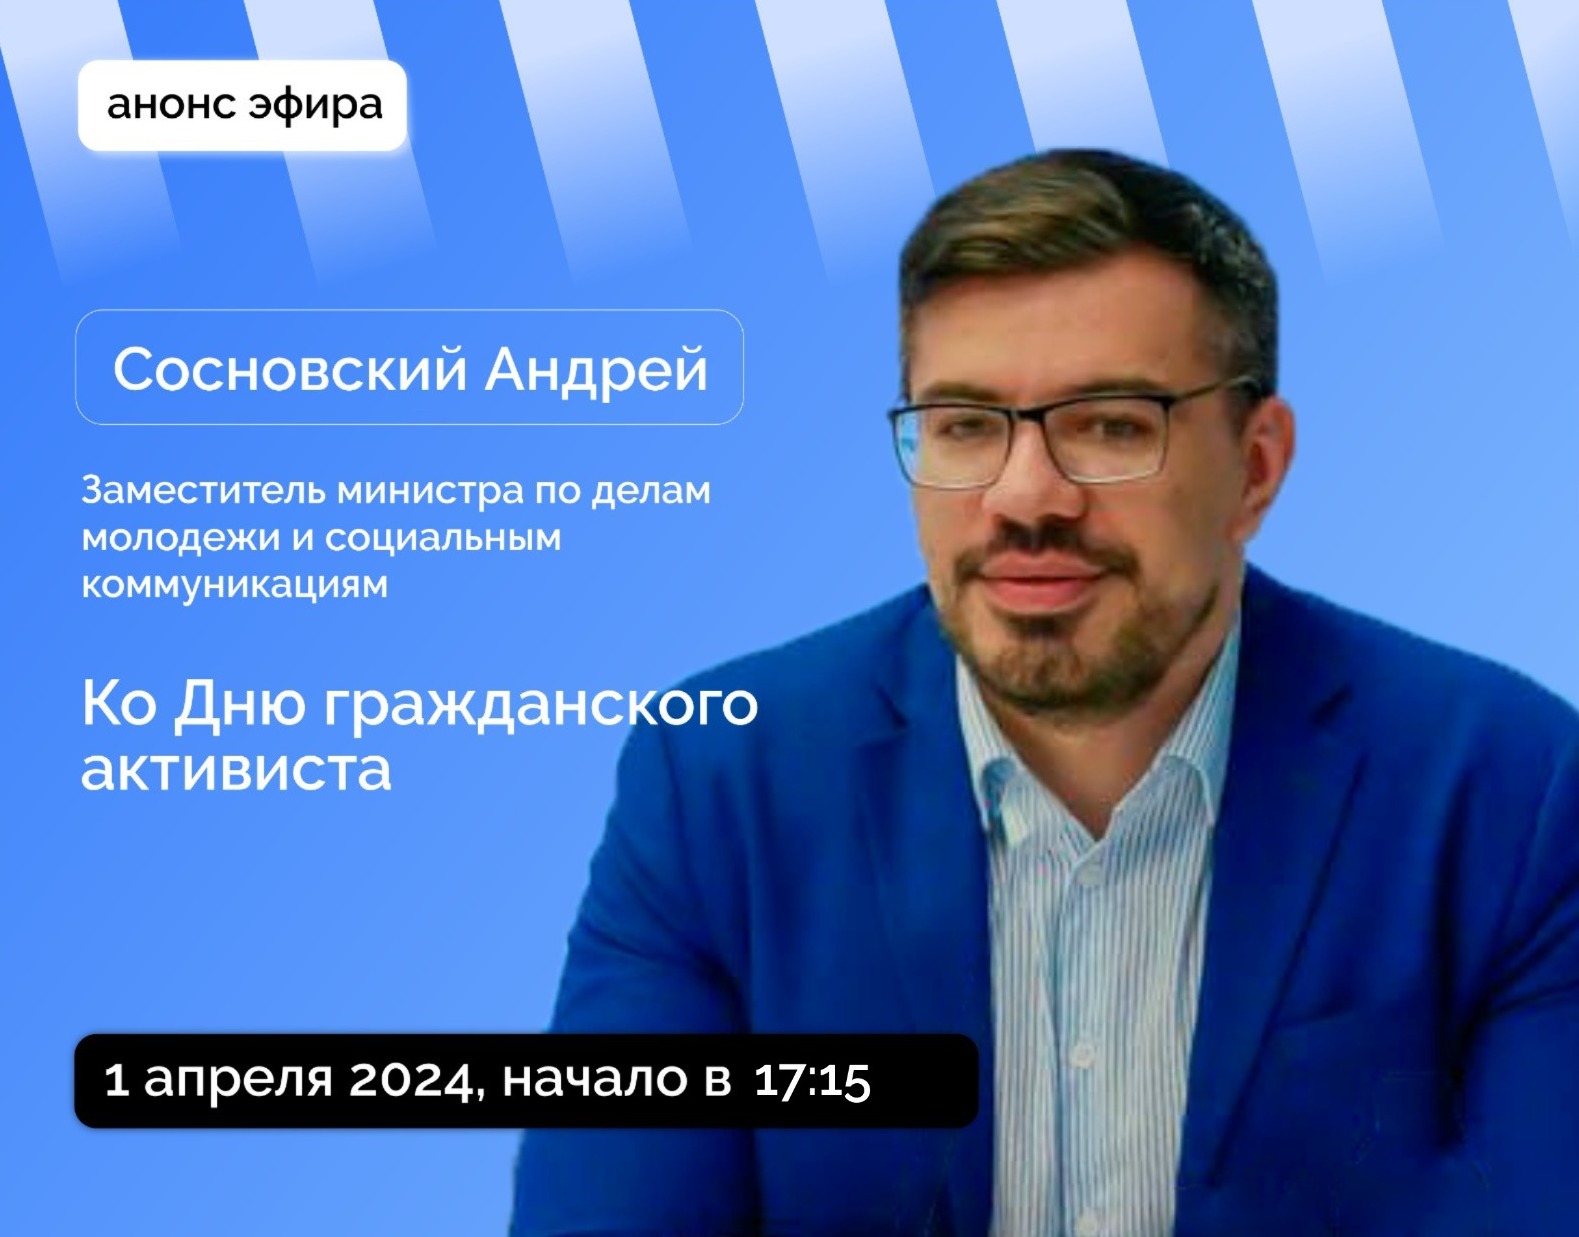 Якутянам расскажут о конкурсном отборе на гранты главы республики для НКО в прямом эфире соцсетей